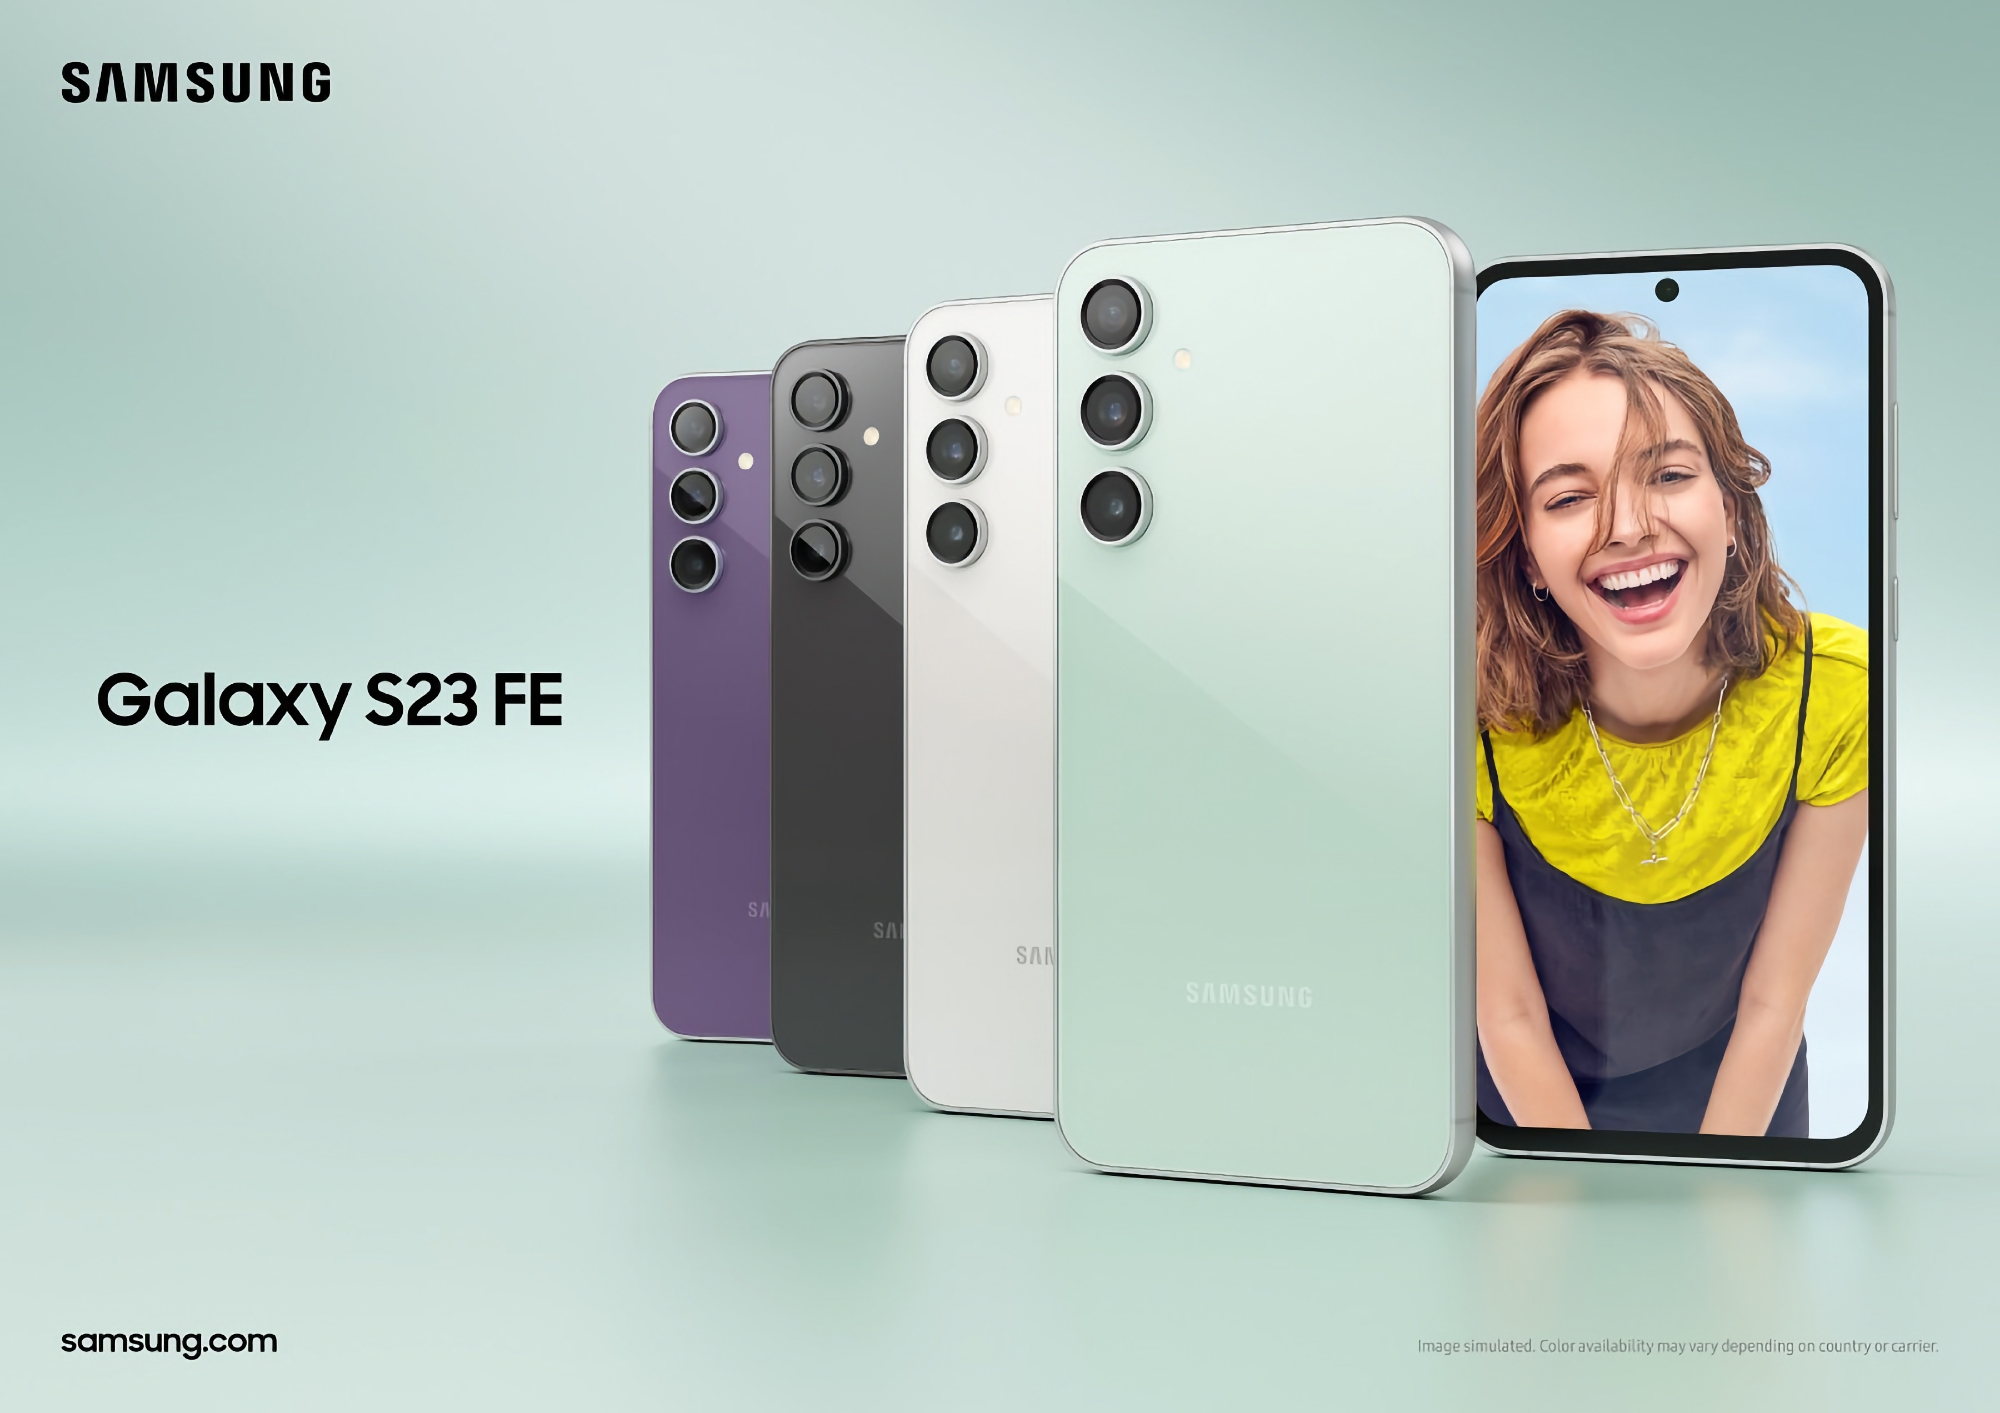 Le Samsung Galaxy S23 FE avec écran OLED 120Hz, puce Snapdragon 8 Gen 1 et appareil photo 50 MP commence à être vendu aux États-Unis